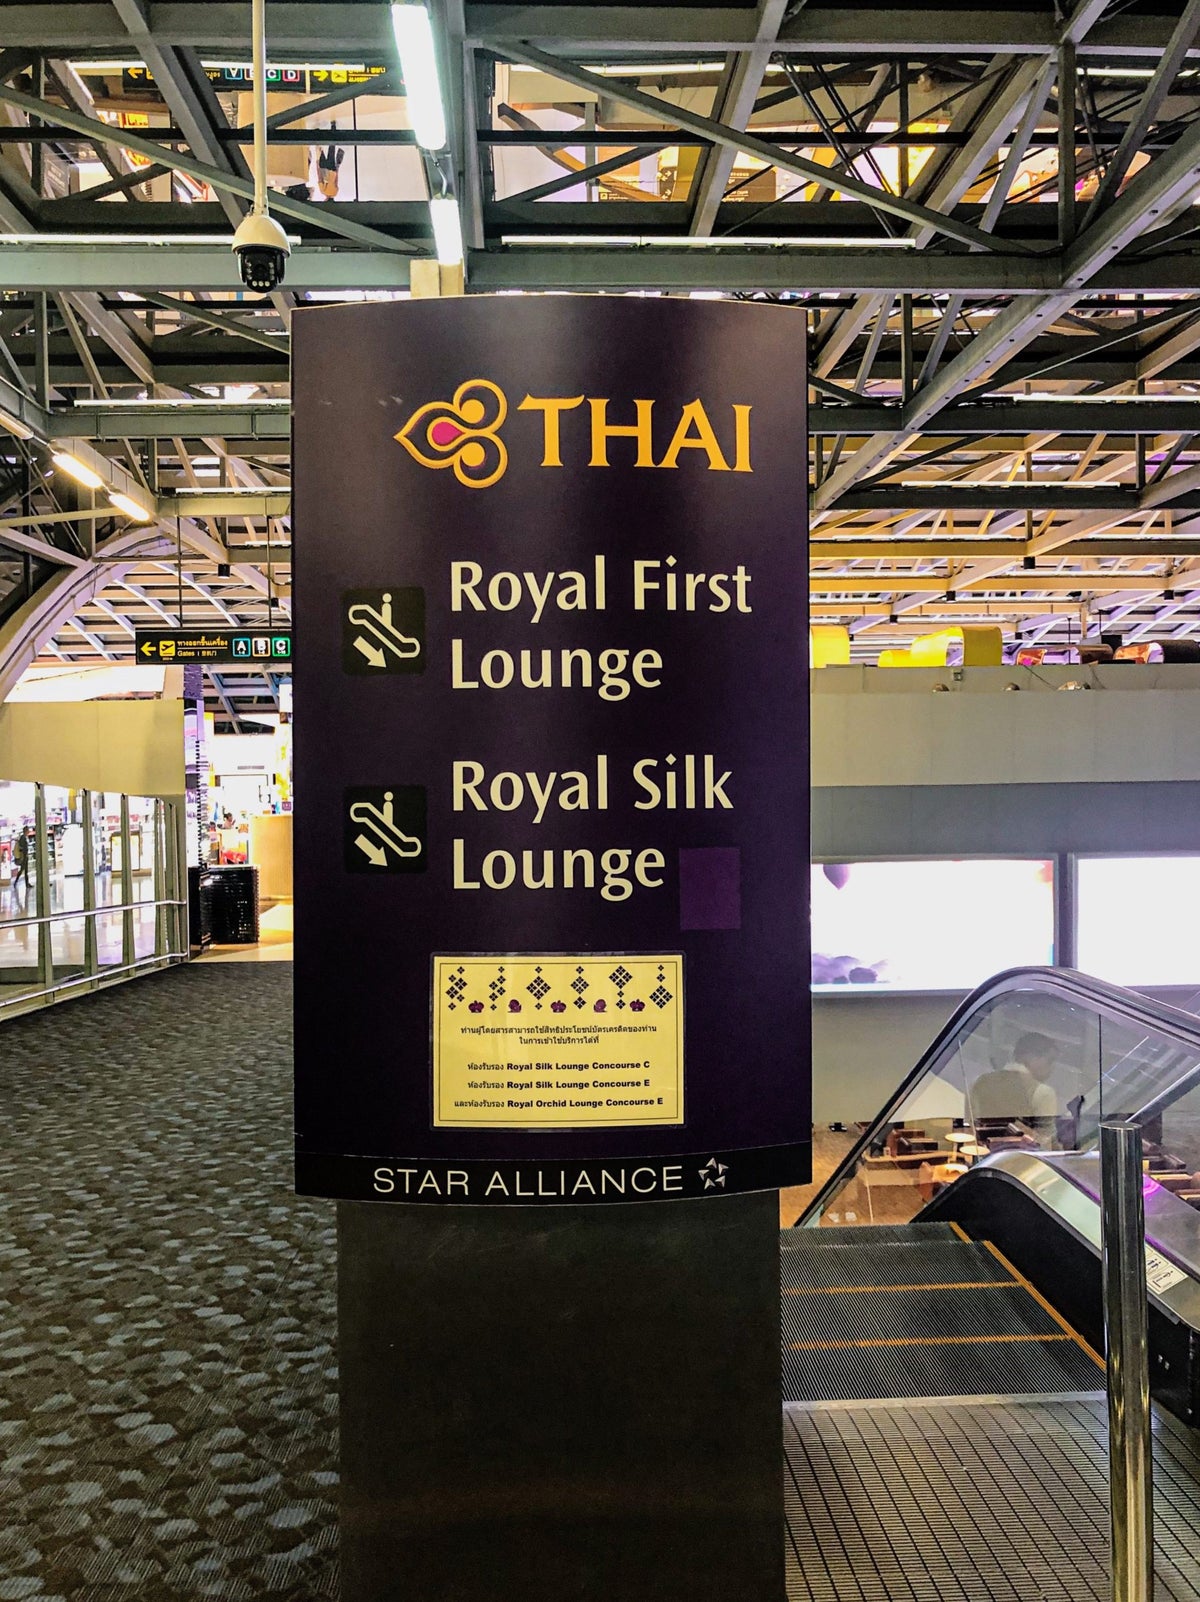 Thai Airways Royal First Lounge